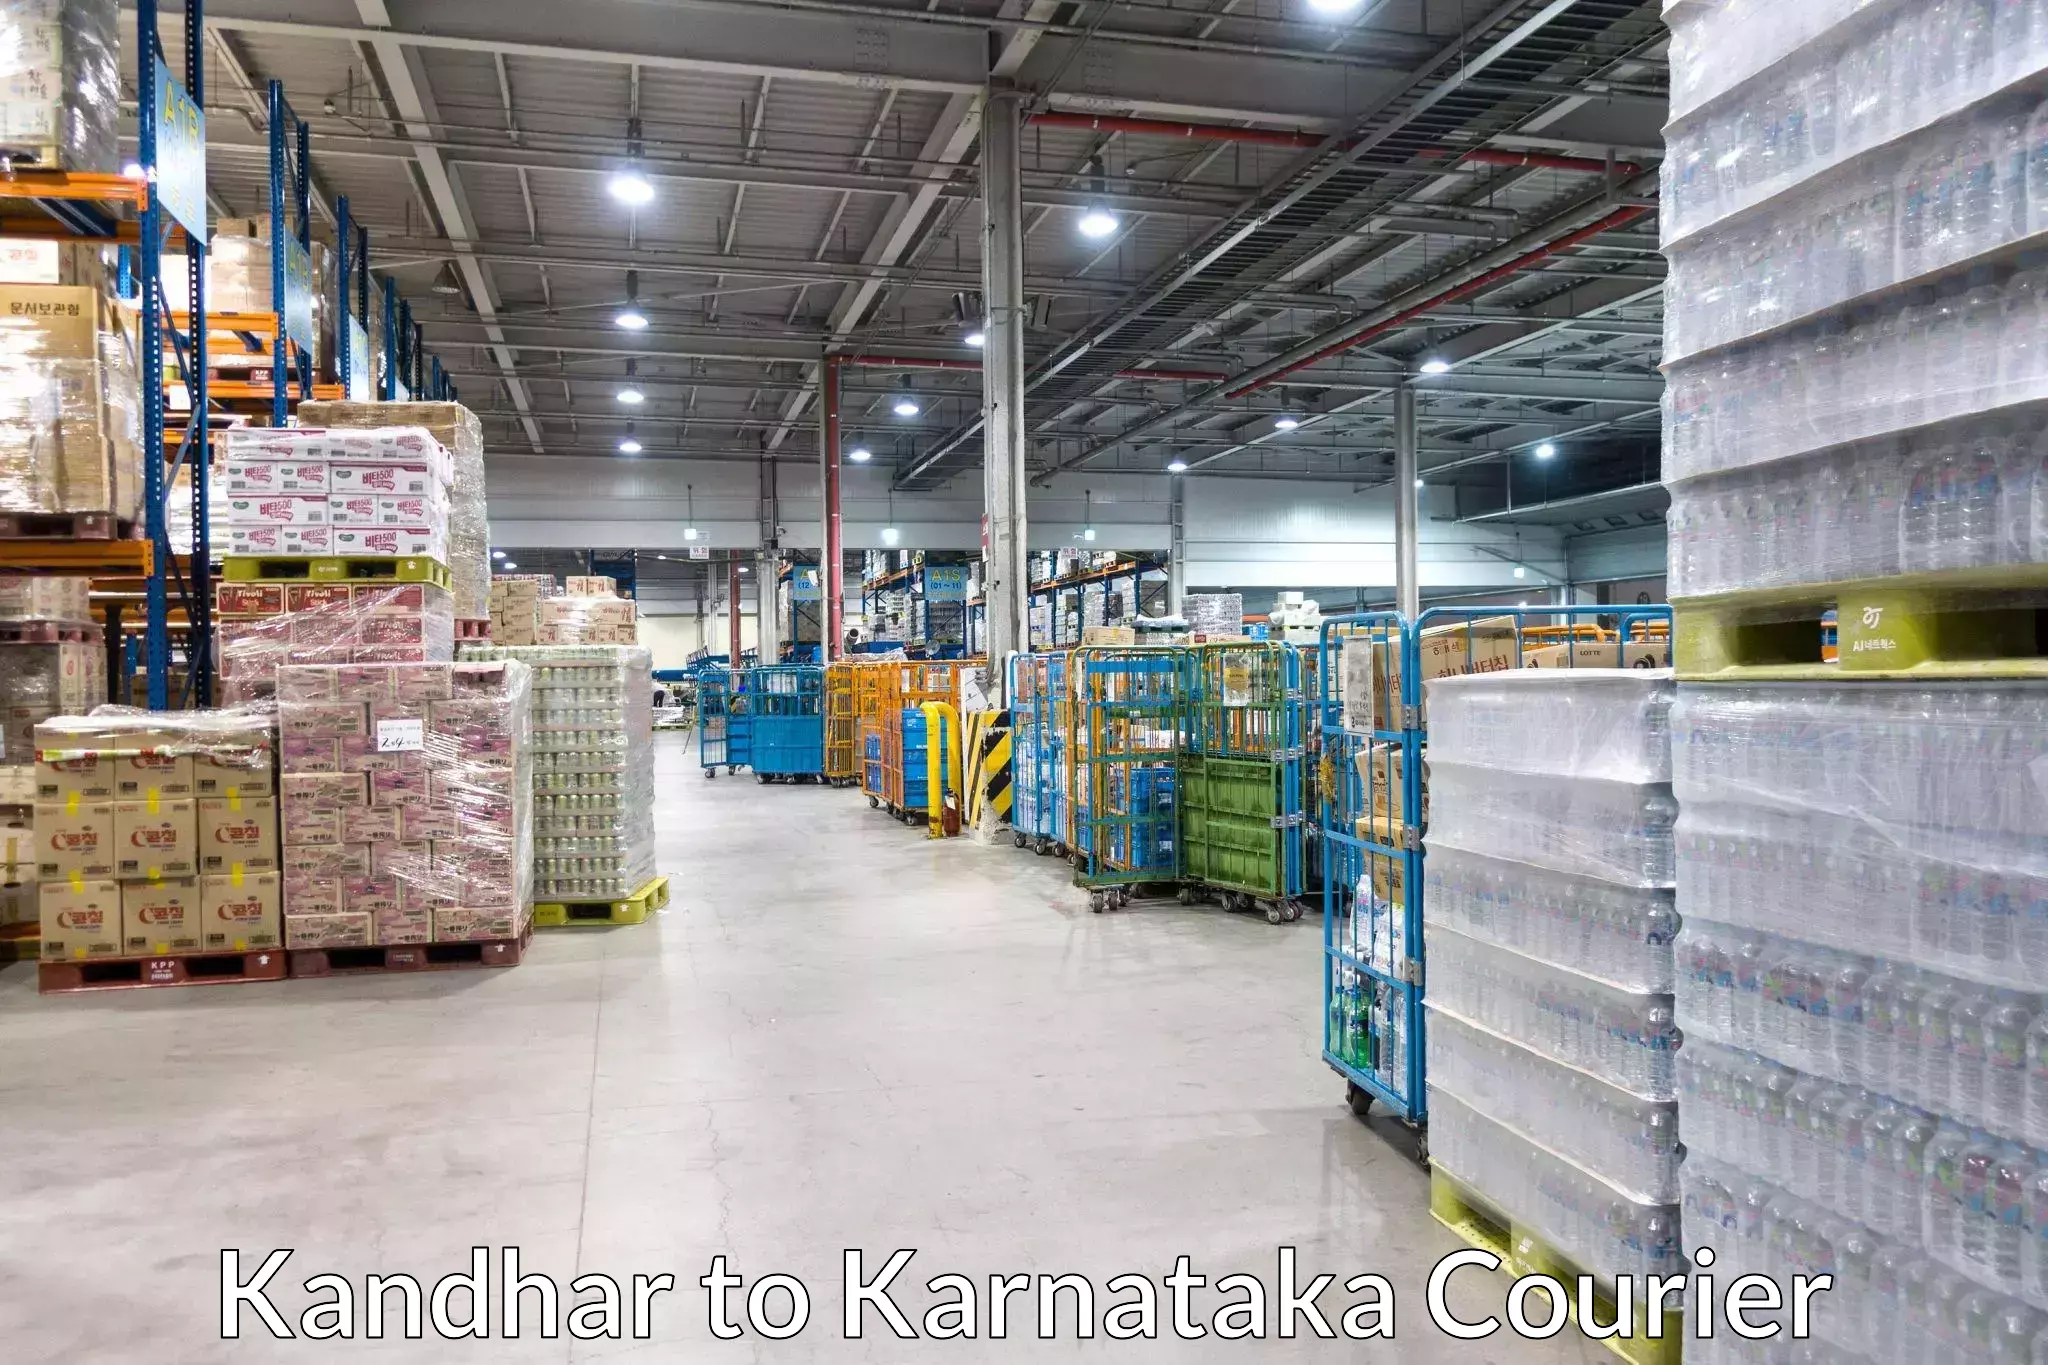 Door-to-door freight service Kandhar to Ukkadagatri